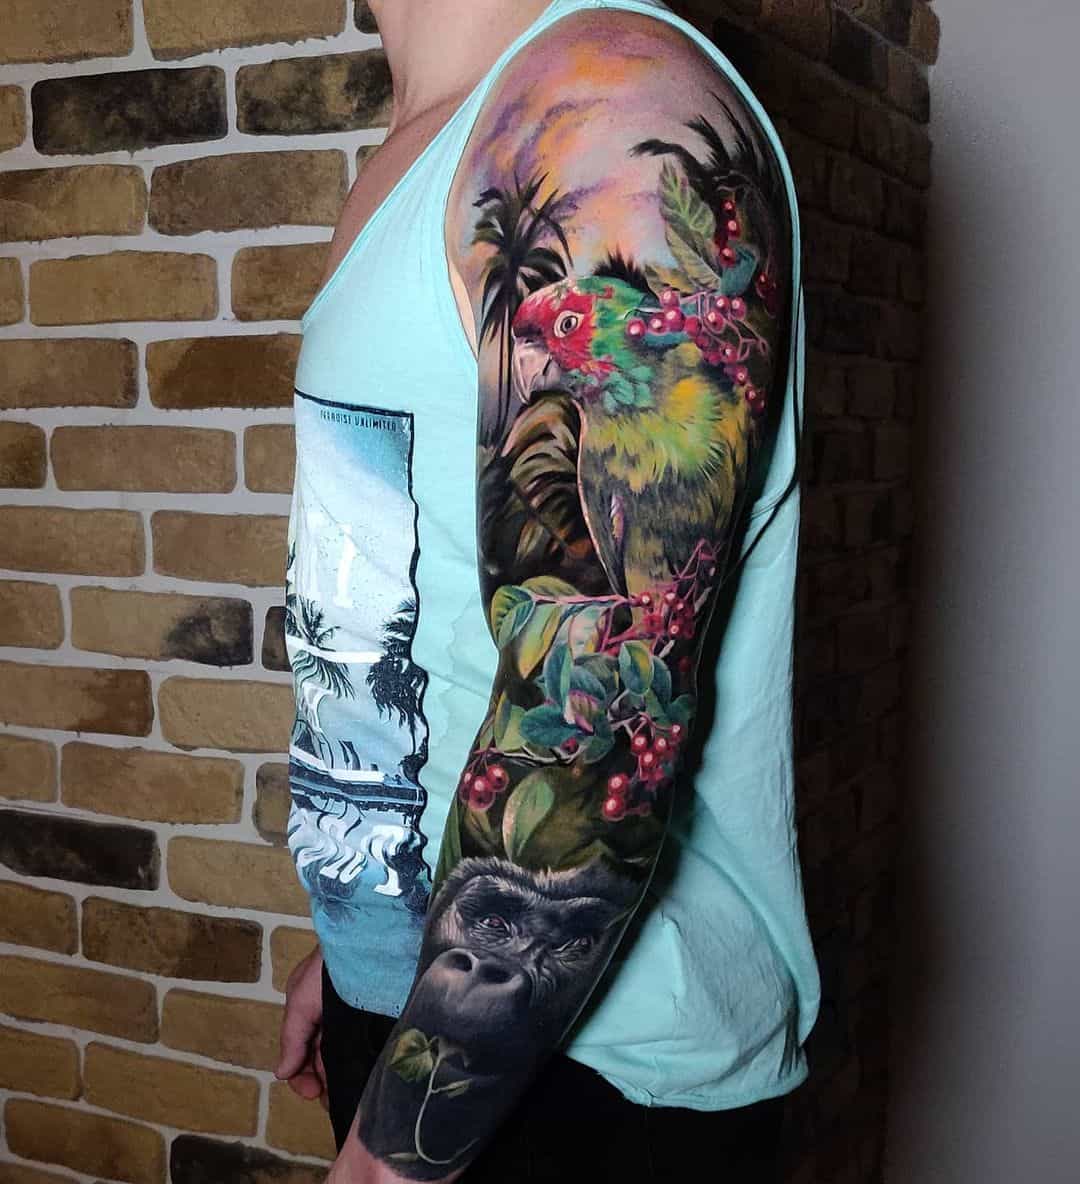 Outstanding Realistic Sleeve Tattoo Designs by Paul-Eerik Rosenberg